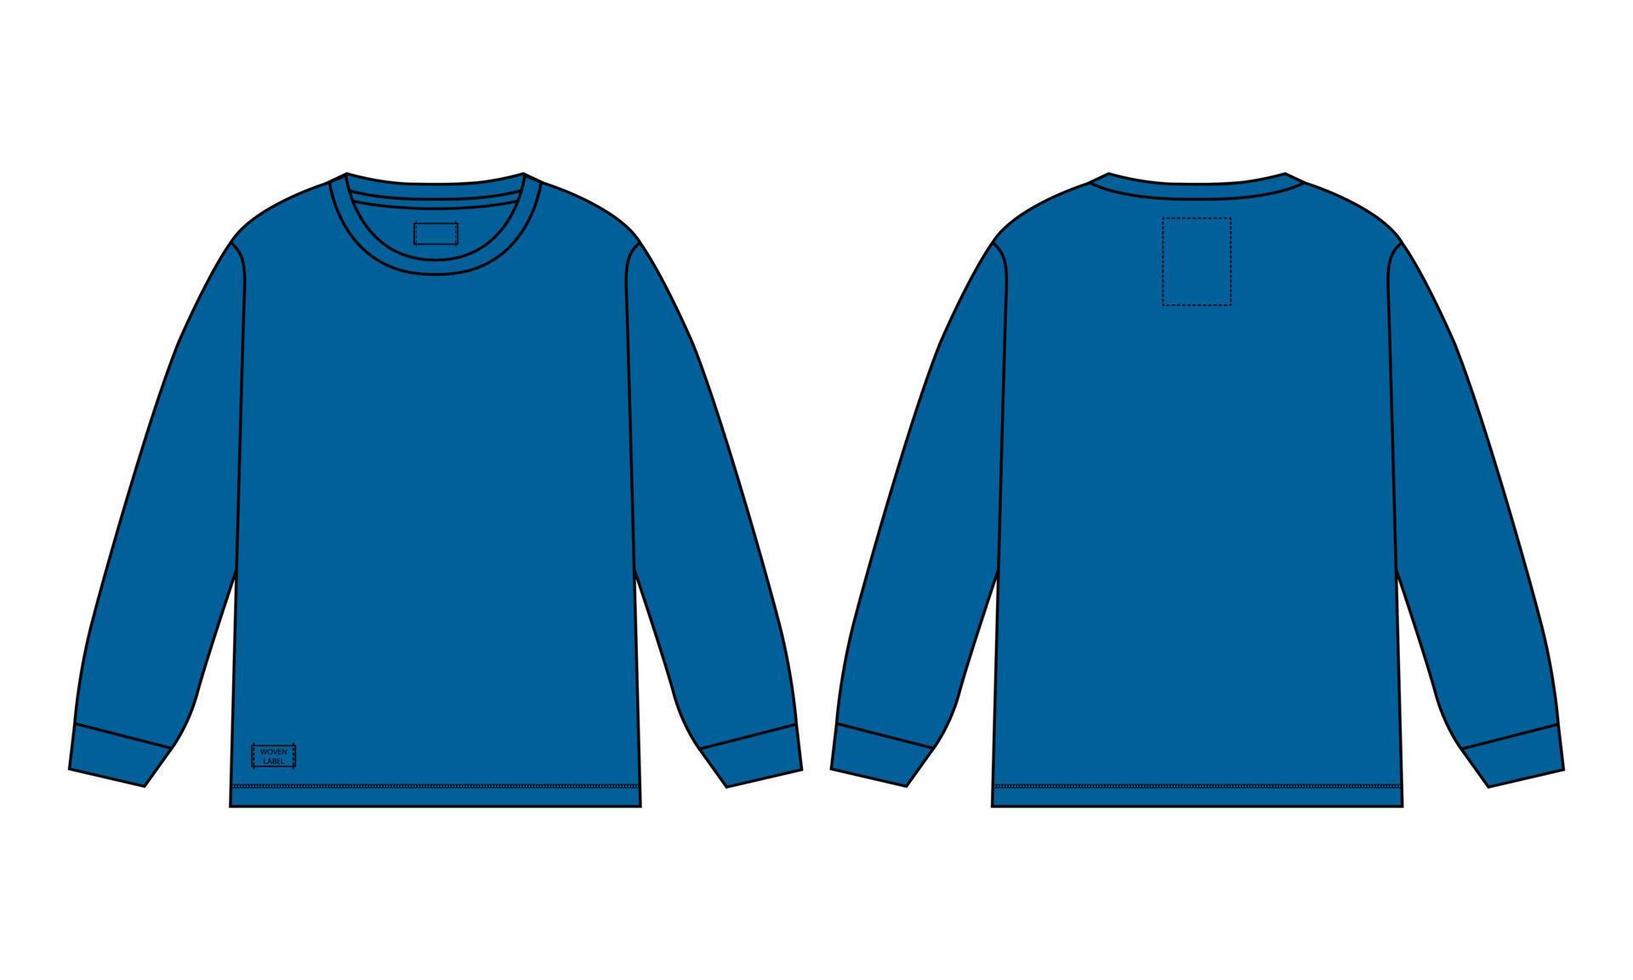 Langarm-T-Shirt technische Mode flache Skizze Vektor-Illustration blaue Farbvorlage Vorlage Vorder- und Rückansicht isoliert auf weißem Hintergrund. vektor